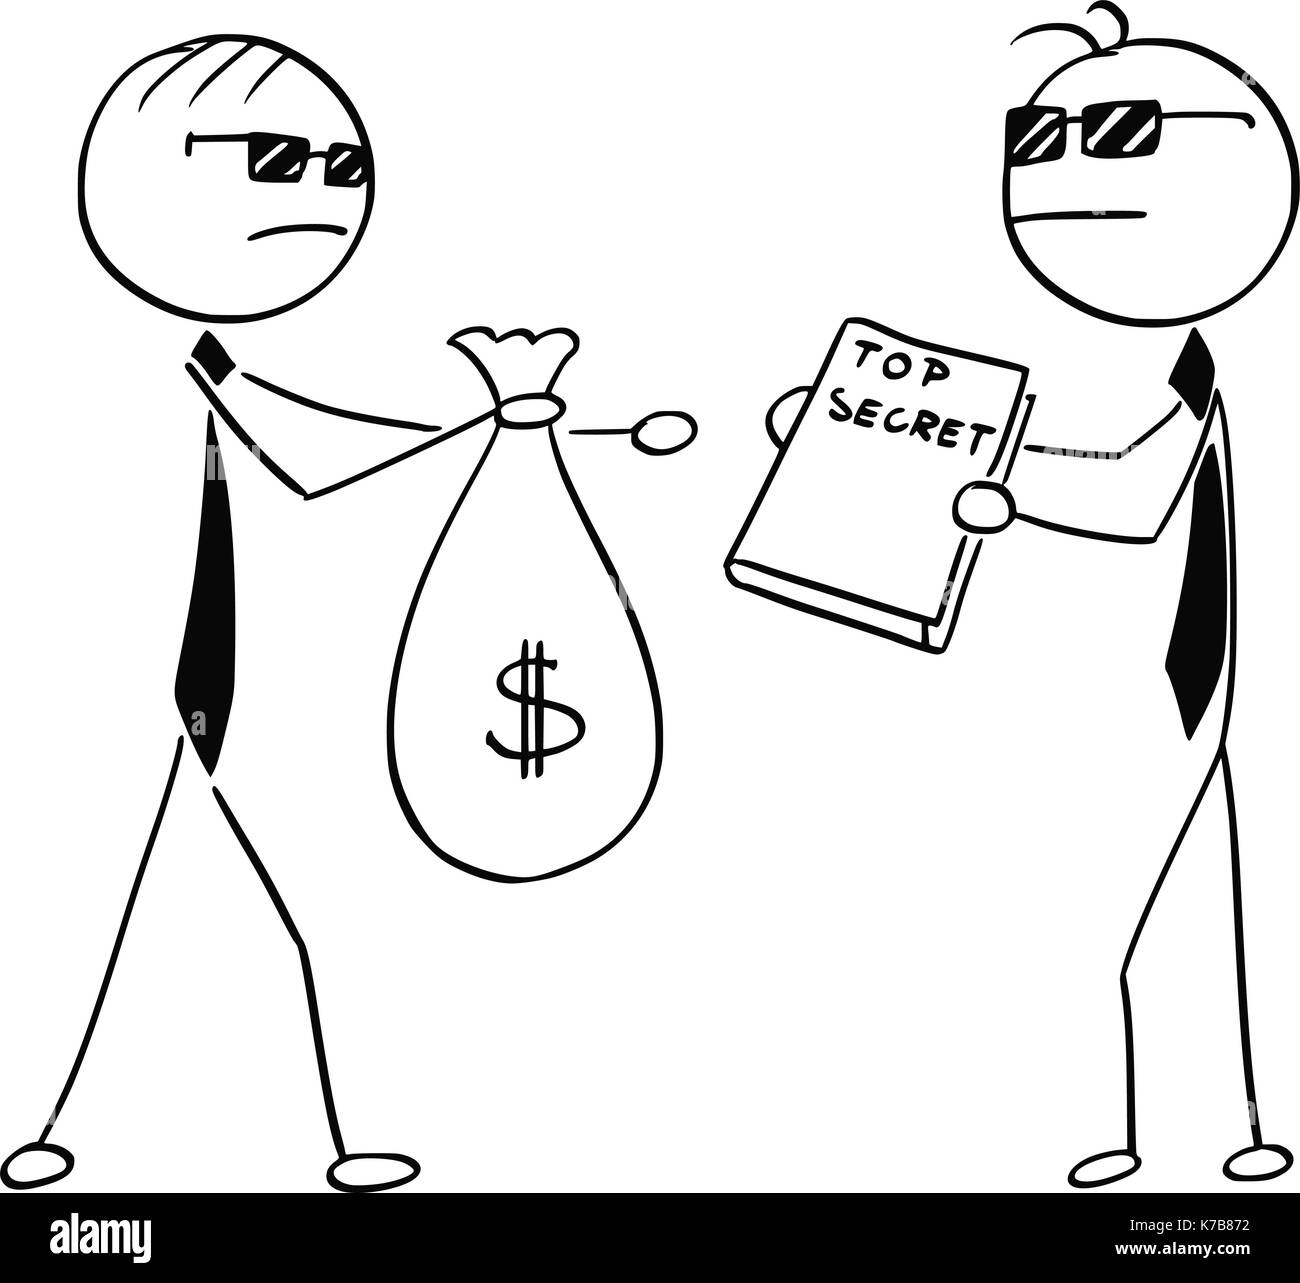 Cartoon stick Mann Abbildung von zwei Agenten Spione Geschäftsleute Verkauf ändern Top Secret für Beutel mit Geld. Stock Vektor